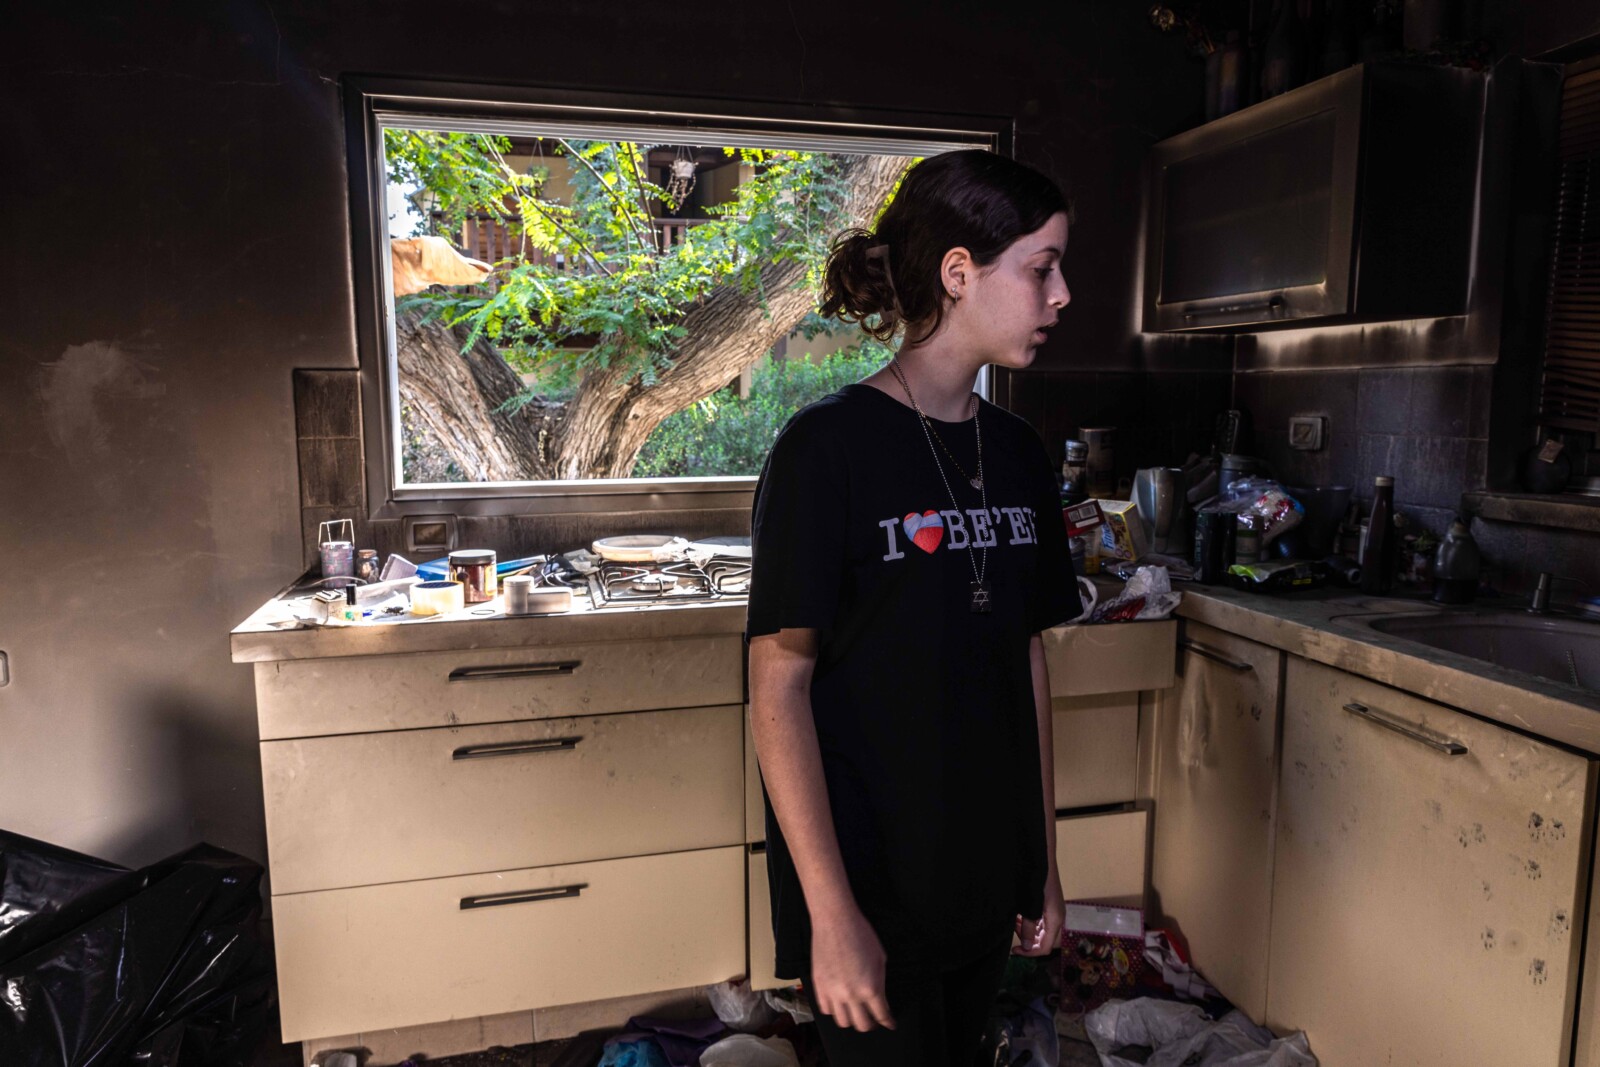 הילה רותם שושני במטבח ביתה ההרוס: "חלמתי המון על האוכל ועל המים בבית" (צילום: כדיה לוי)